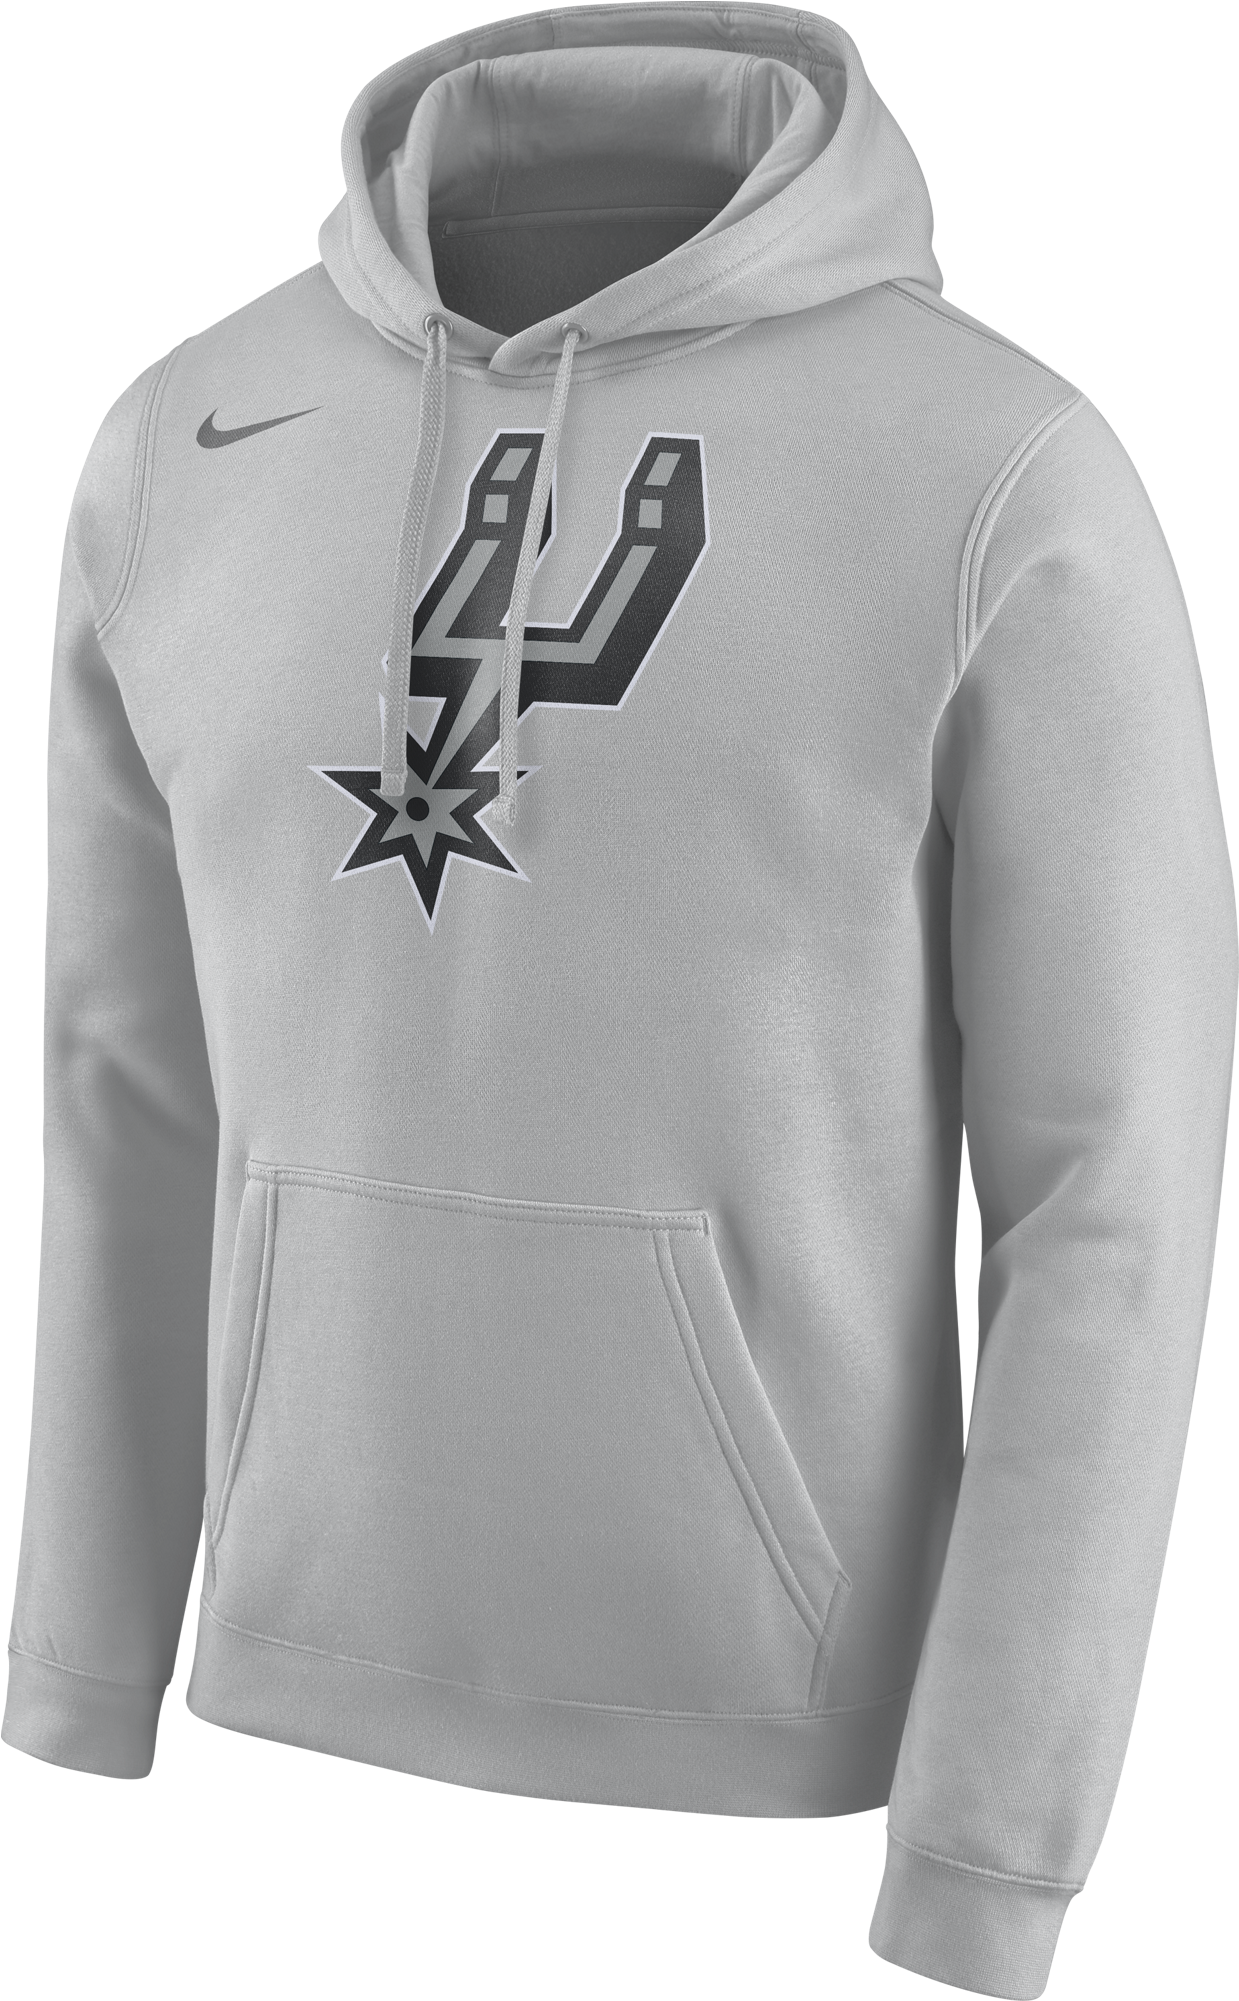 Nike Nba San Antonio Spurs Hoodie Club Logo - Nike San Antonio Spurs Club Hoodie (2000x2000), Png Download